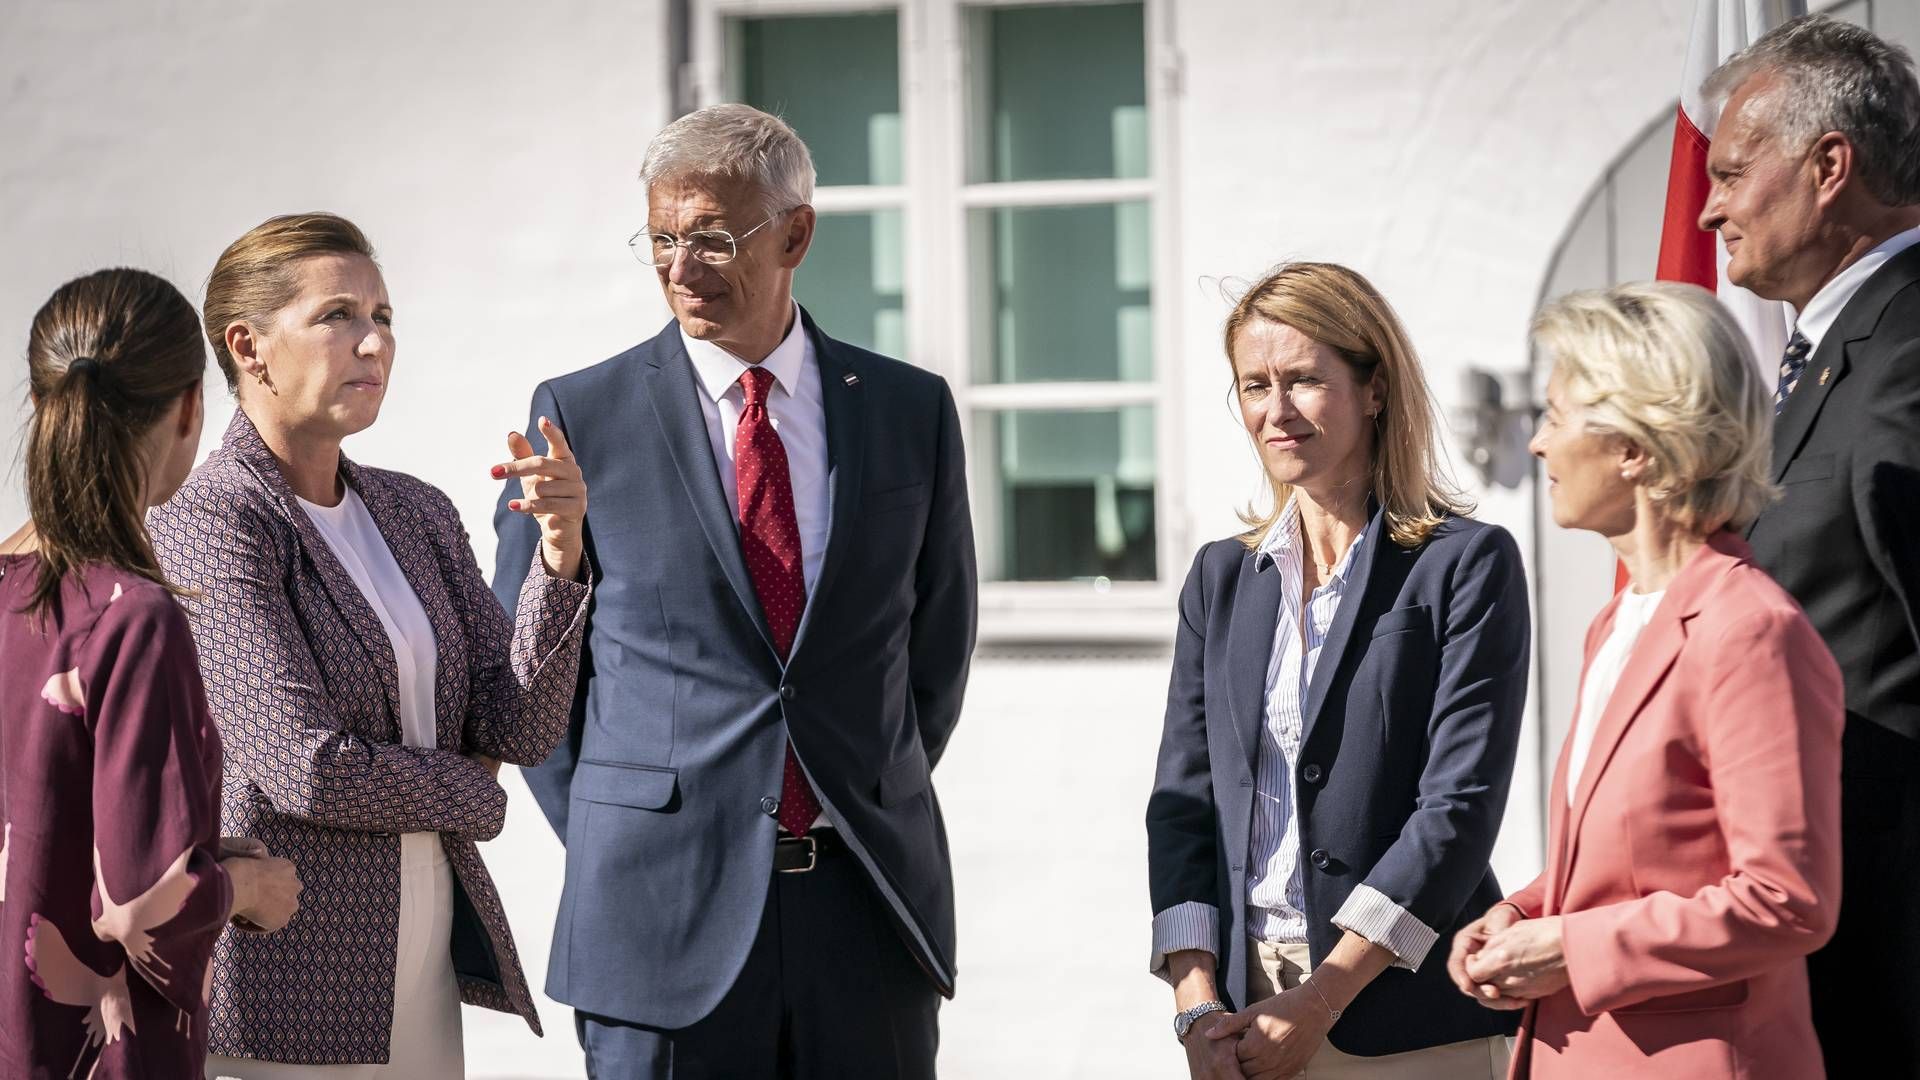 Otte europæiske statsledere og Kommissionens formand, Ursula von der Leyen, mødes tirsdag på Marienborg til energitopmøde under overskriften "The Baltic Sea - Energy Security Summit". | Foto: Mads Claus Rasmussen